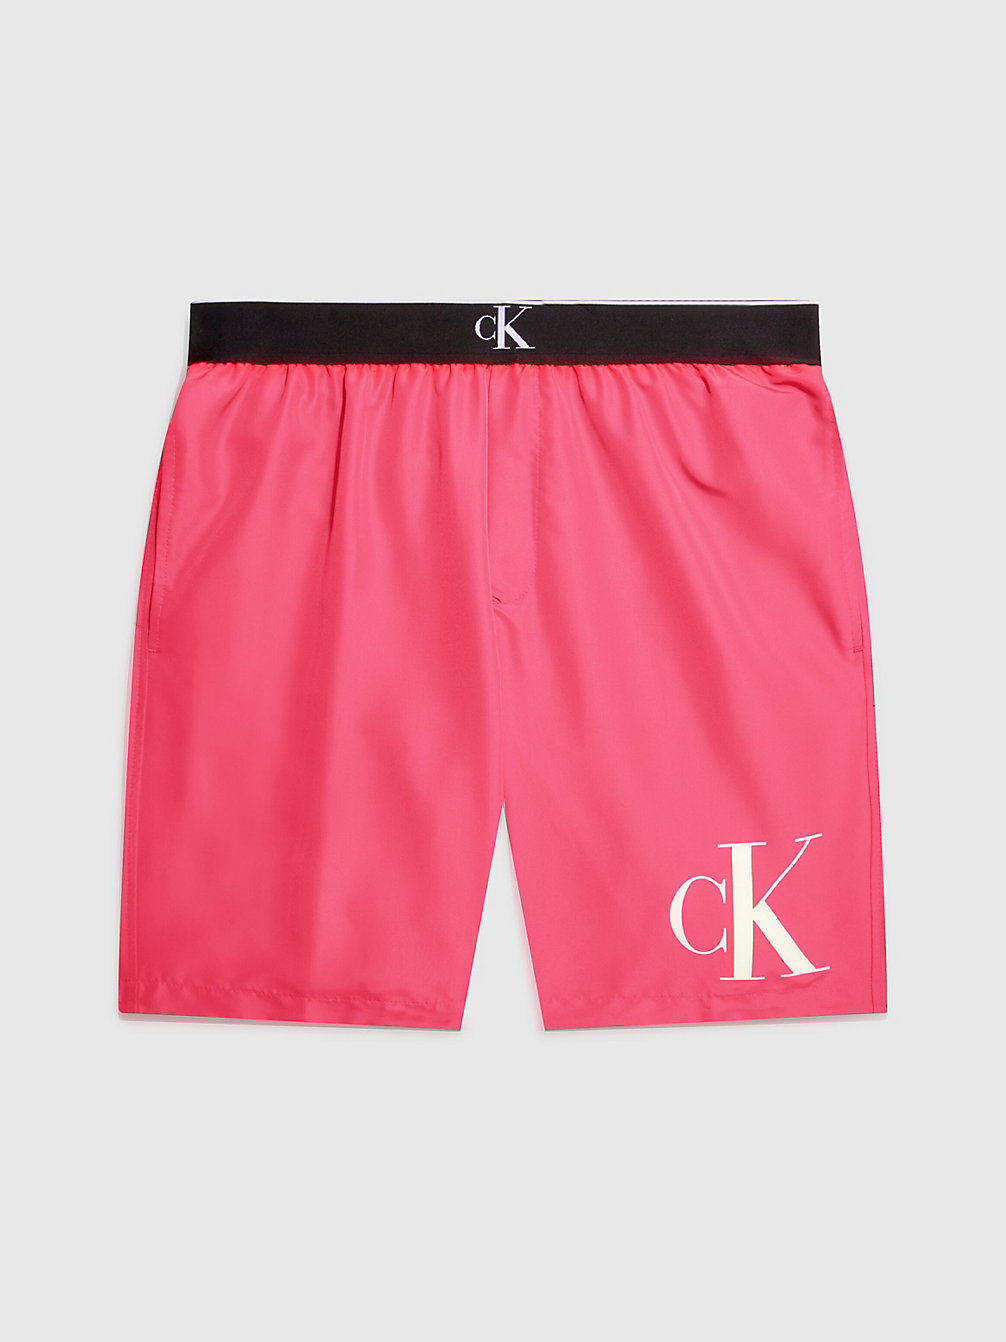 PINK FLASH Lange Badeshorts – CK Monogram undefined Herren Calvin Klein